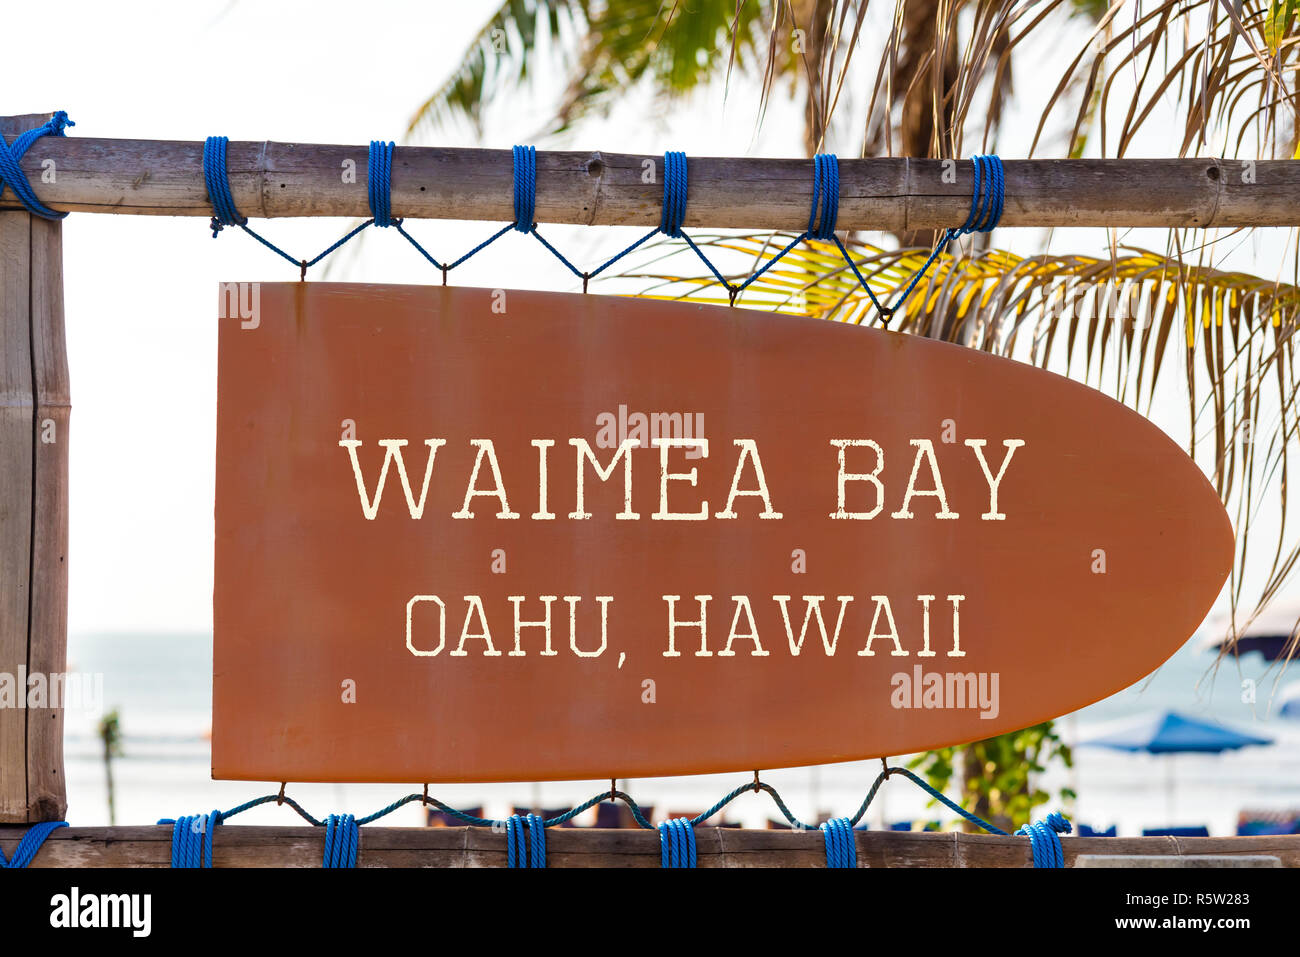 Pancarte vintage orange en forme de surf avec Waimea Bay, Oahu, Hawaii surf spot pour texte et palmier en arrière-plan Banque D'Images